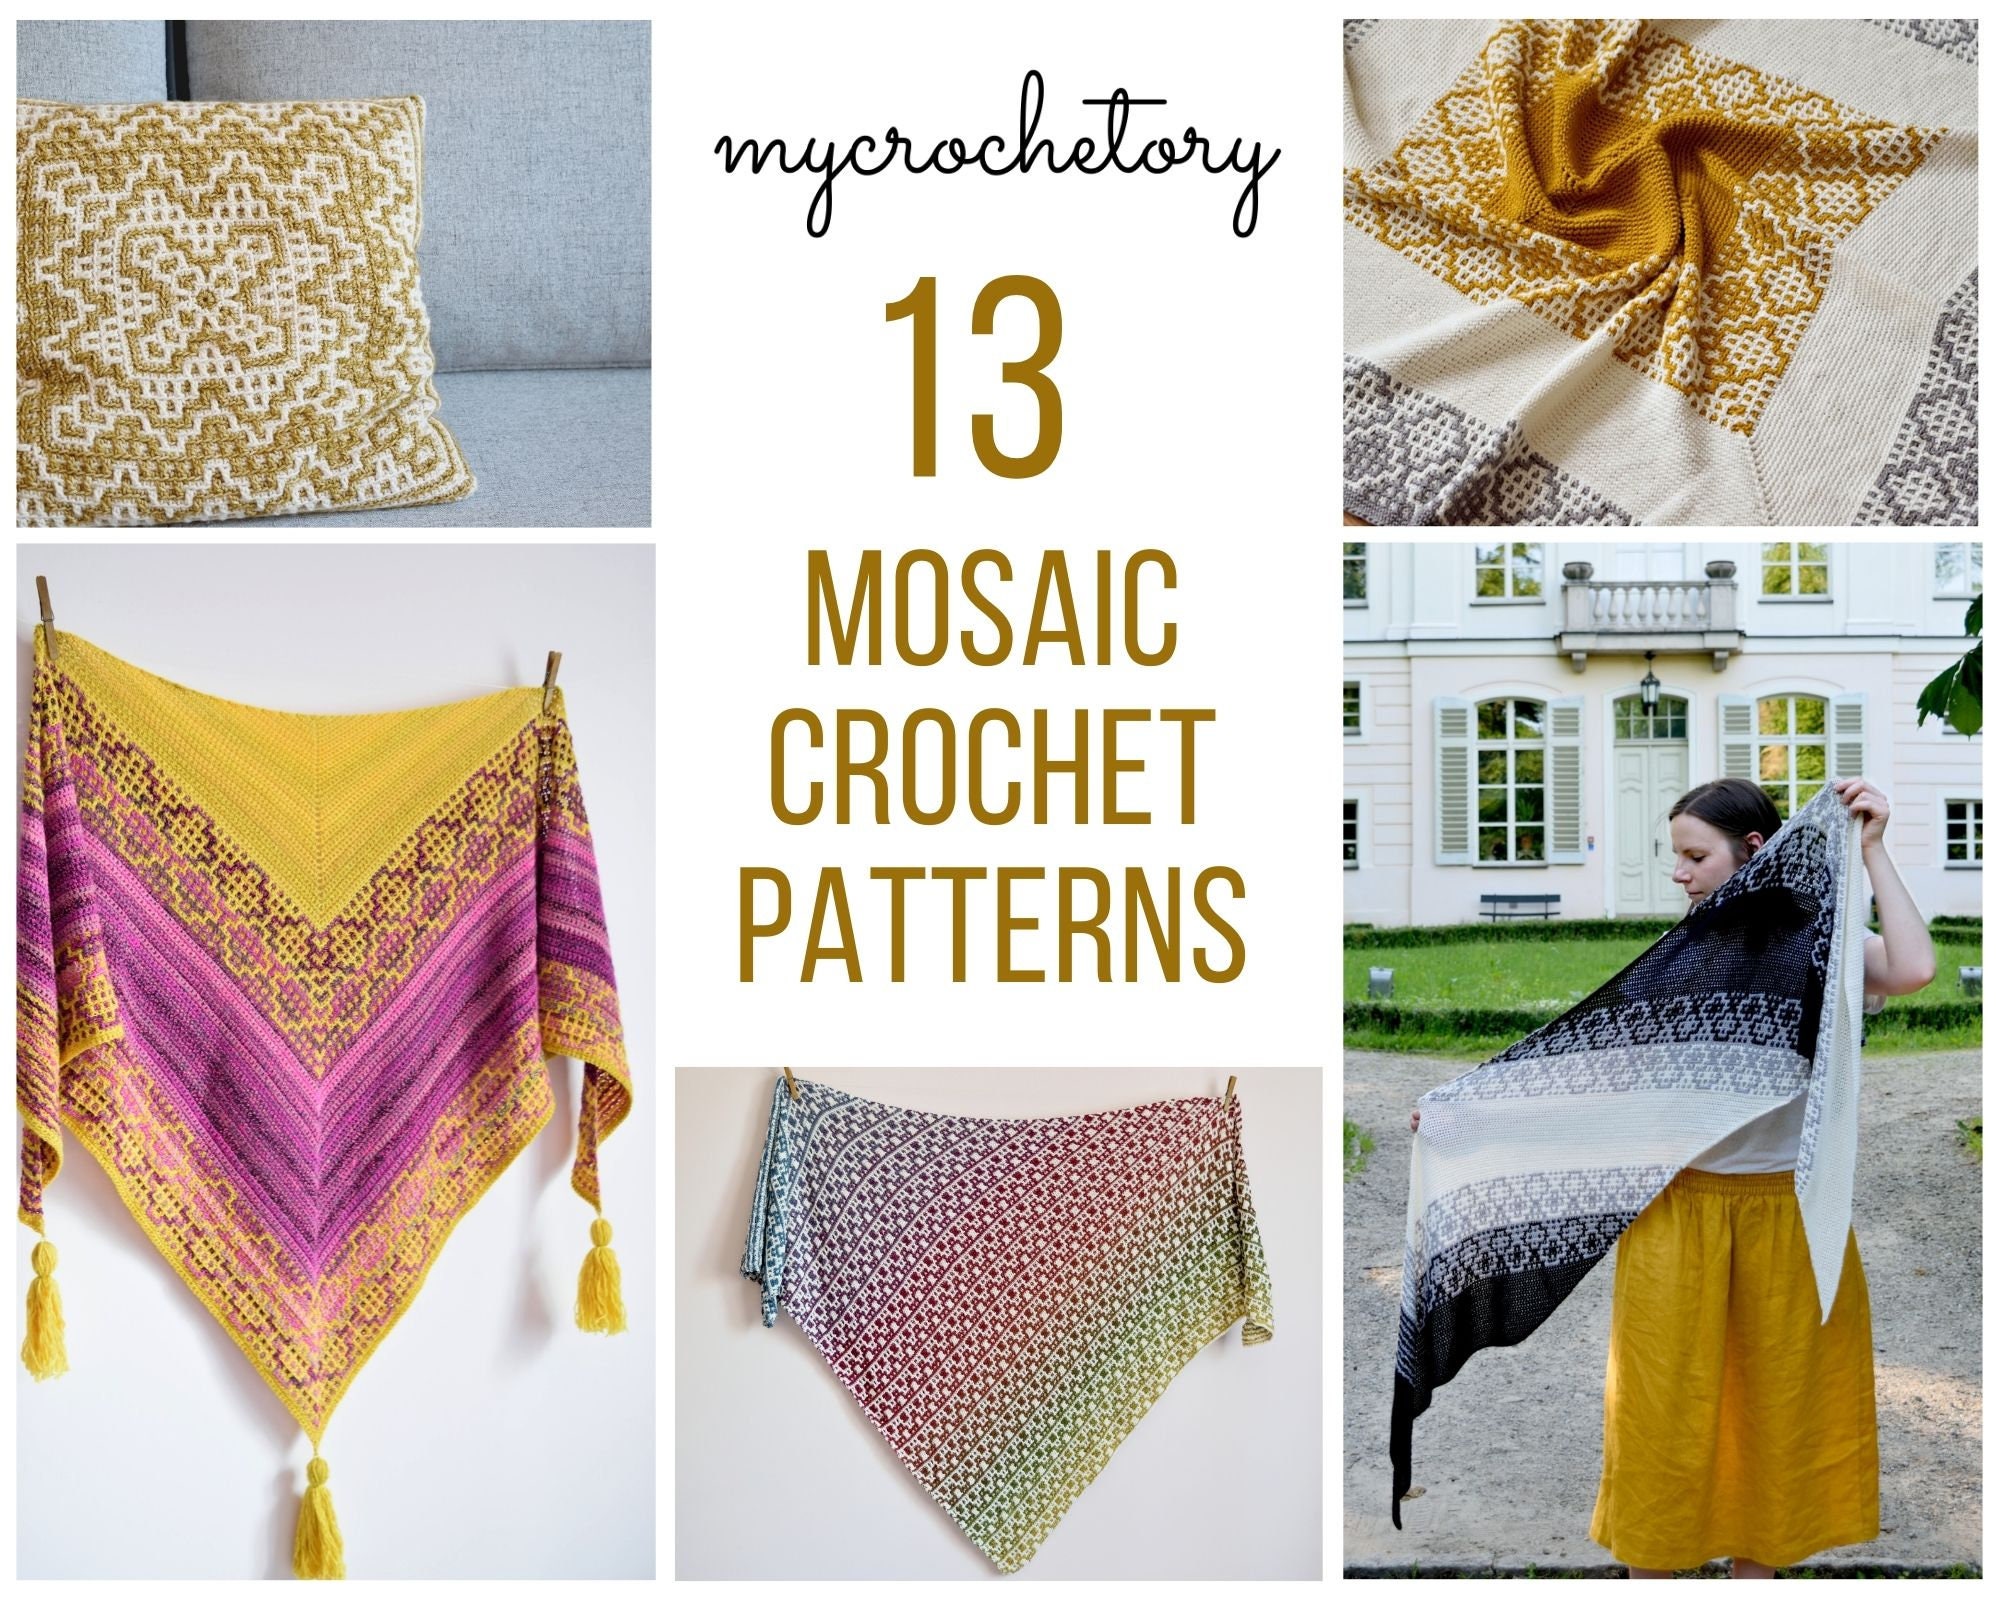 10 free mosaic crochet patterns - MyCrochetory